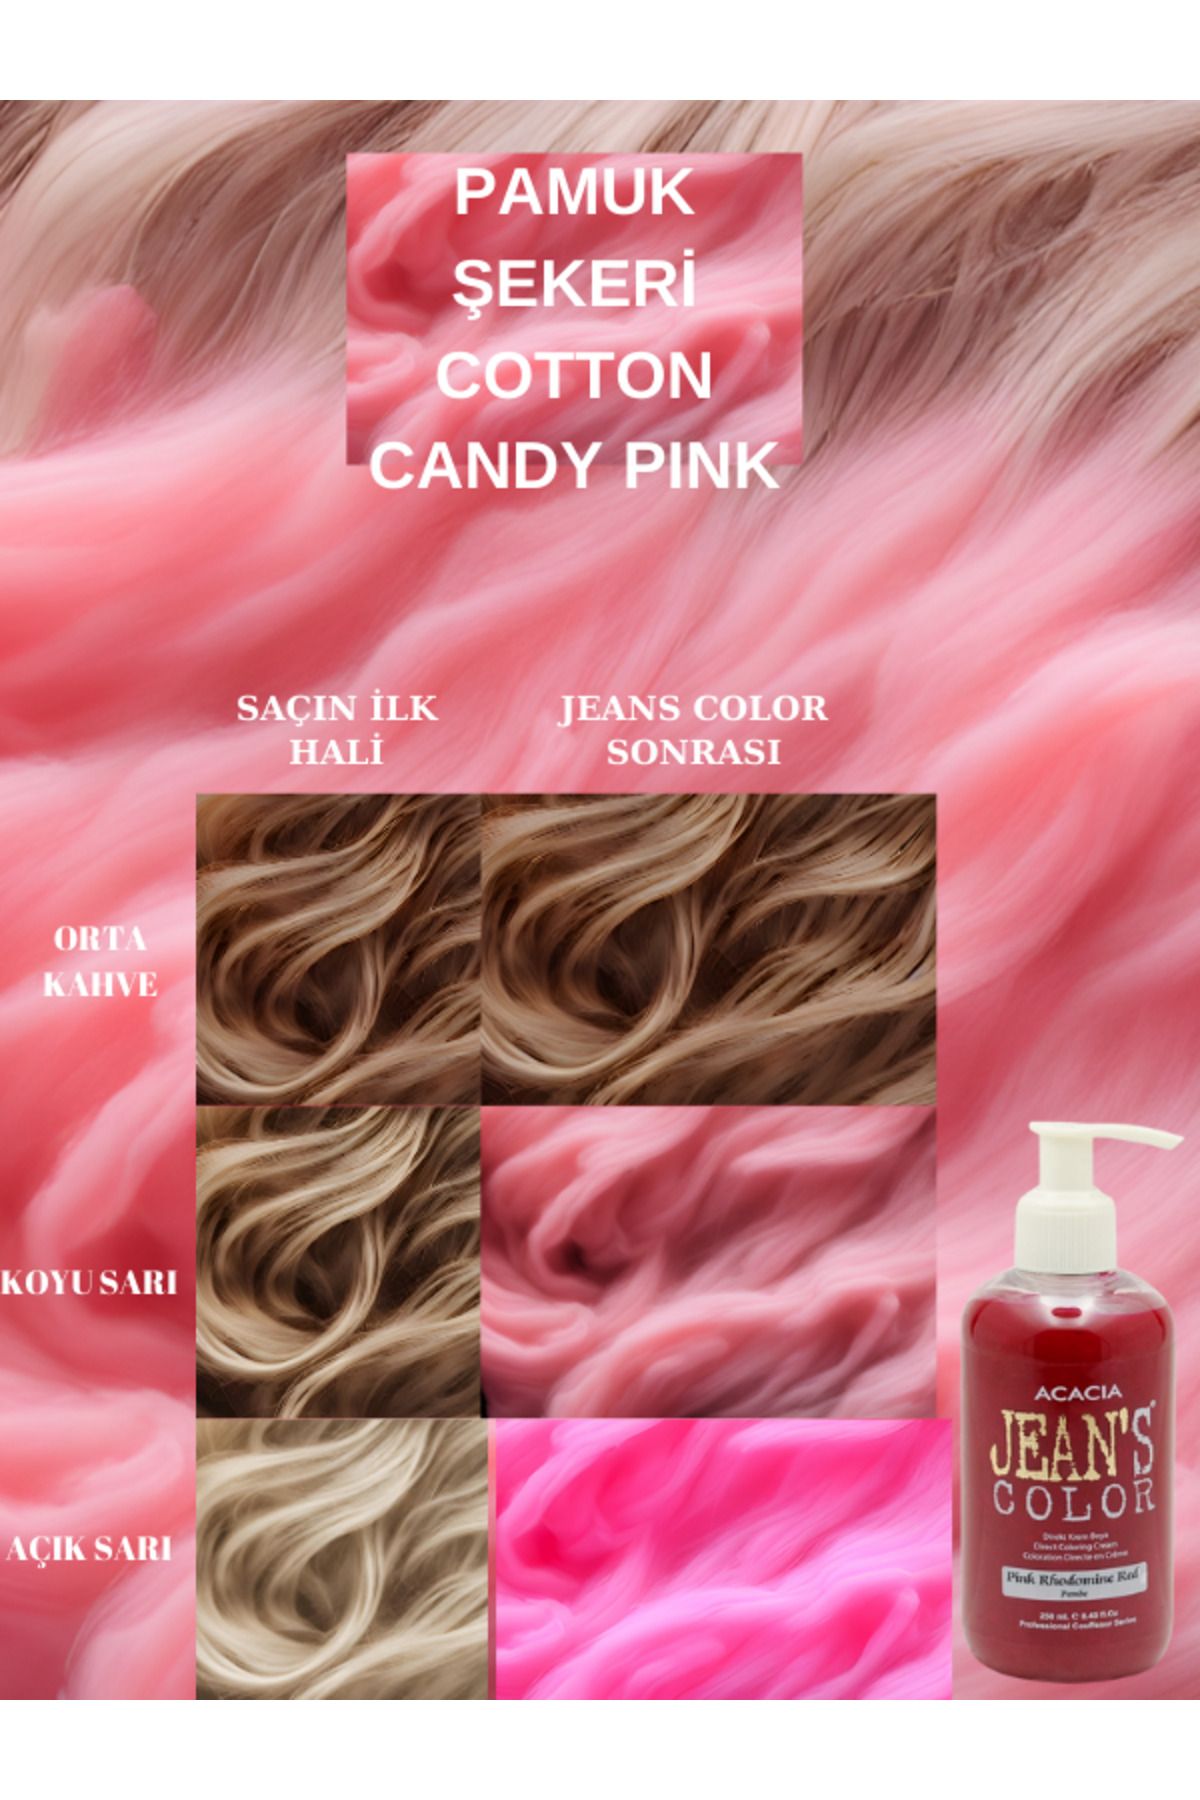 Acacia Jean's Color Pamuk Şekeri Pembe 250ml. Cotton Candy Pınk Amonyaksız Balyaj Renkli Saç Boyası